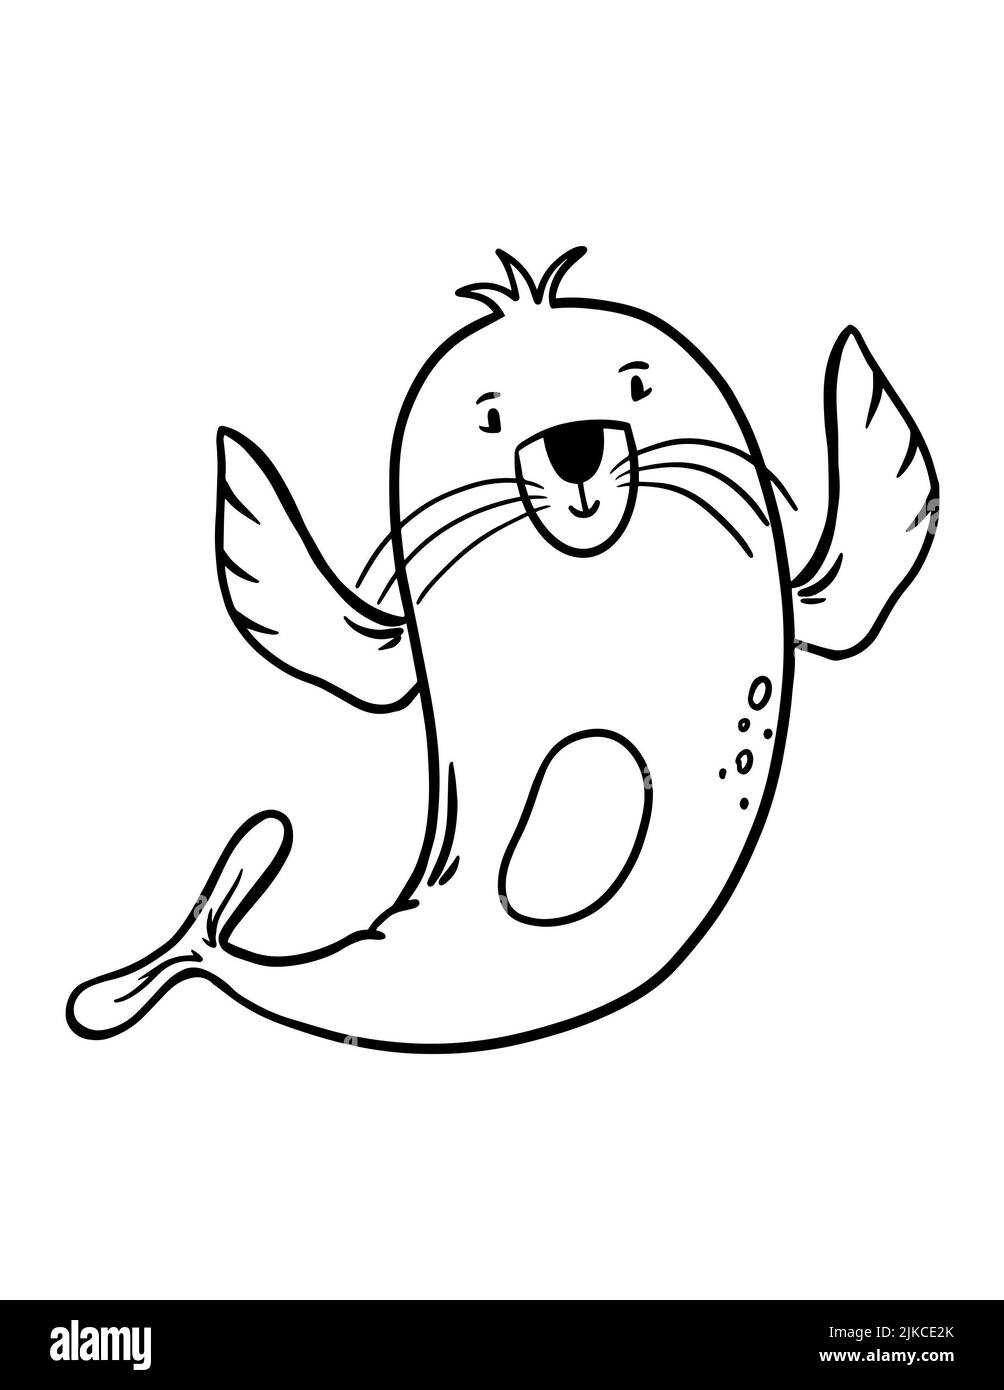 Page de coloriage des phoques à fourrure pour enfants. Illustration simple d'un animal marin sur fond blanc. Banque D'Images